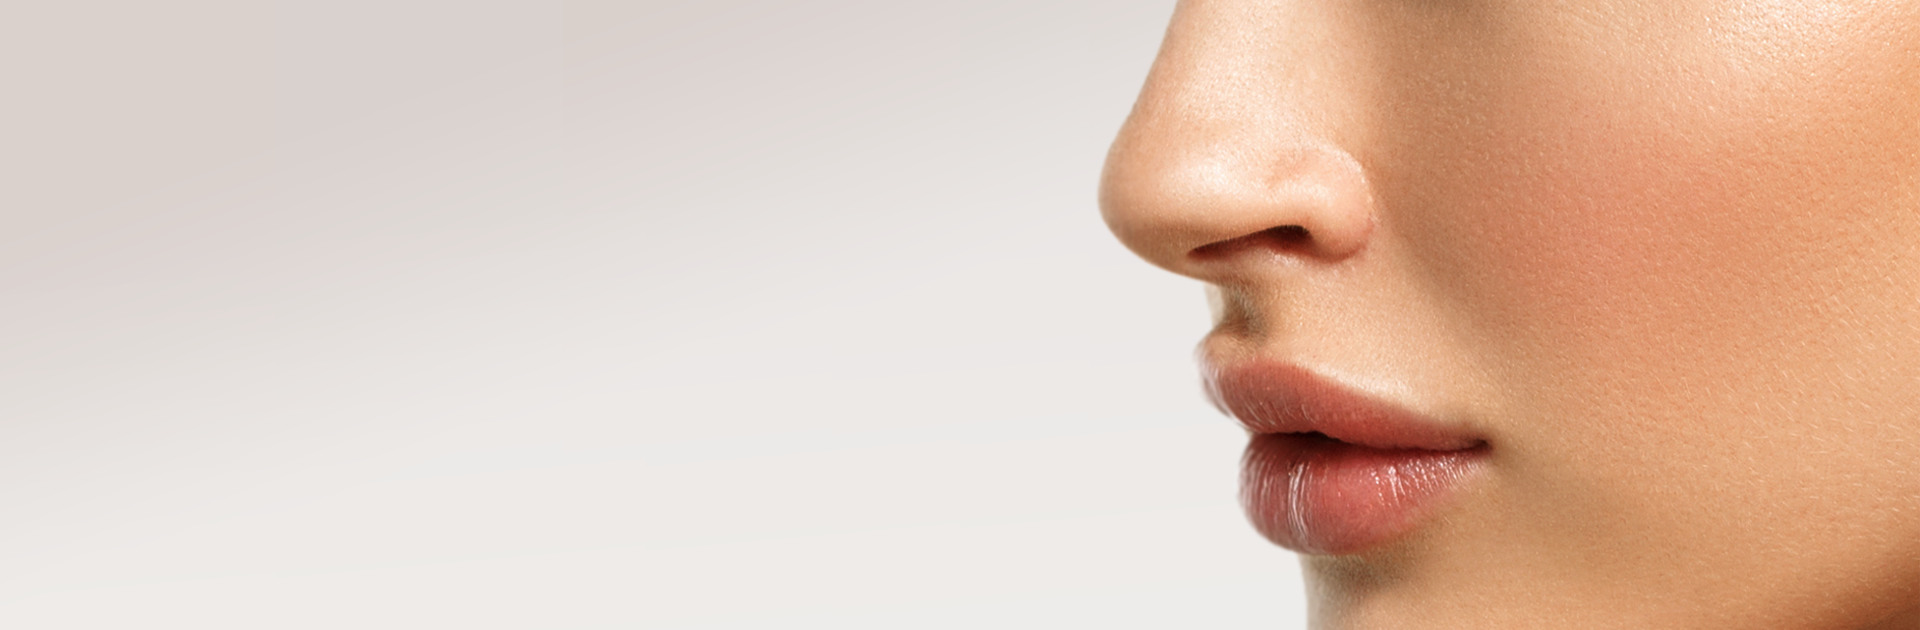 Пластическая операция носа – ринопластика